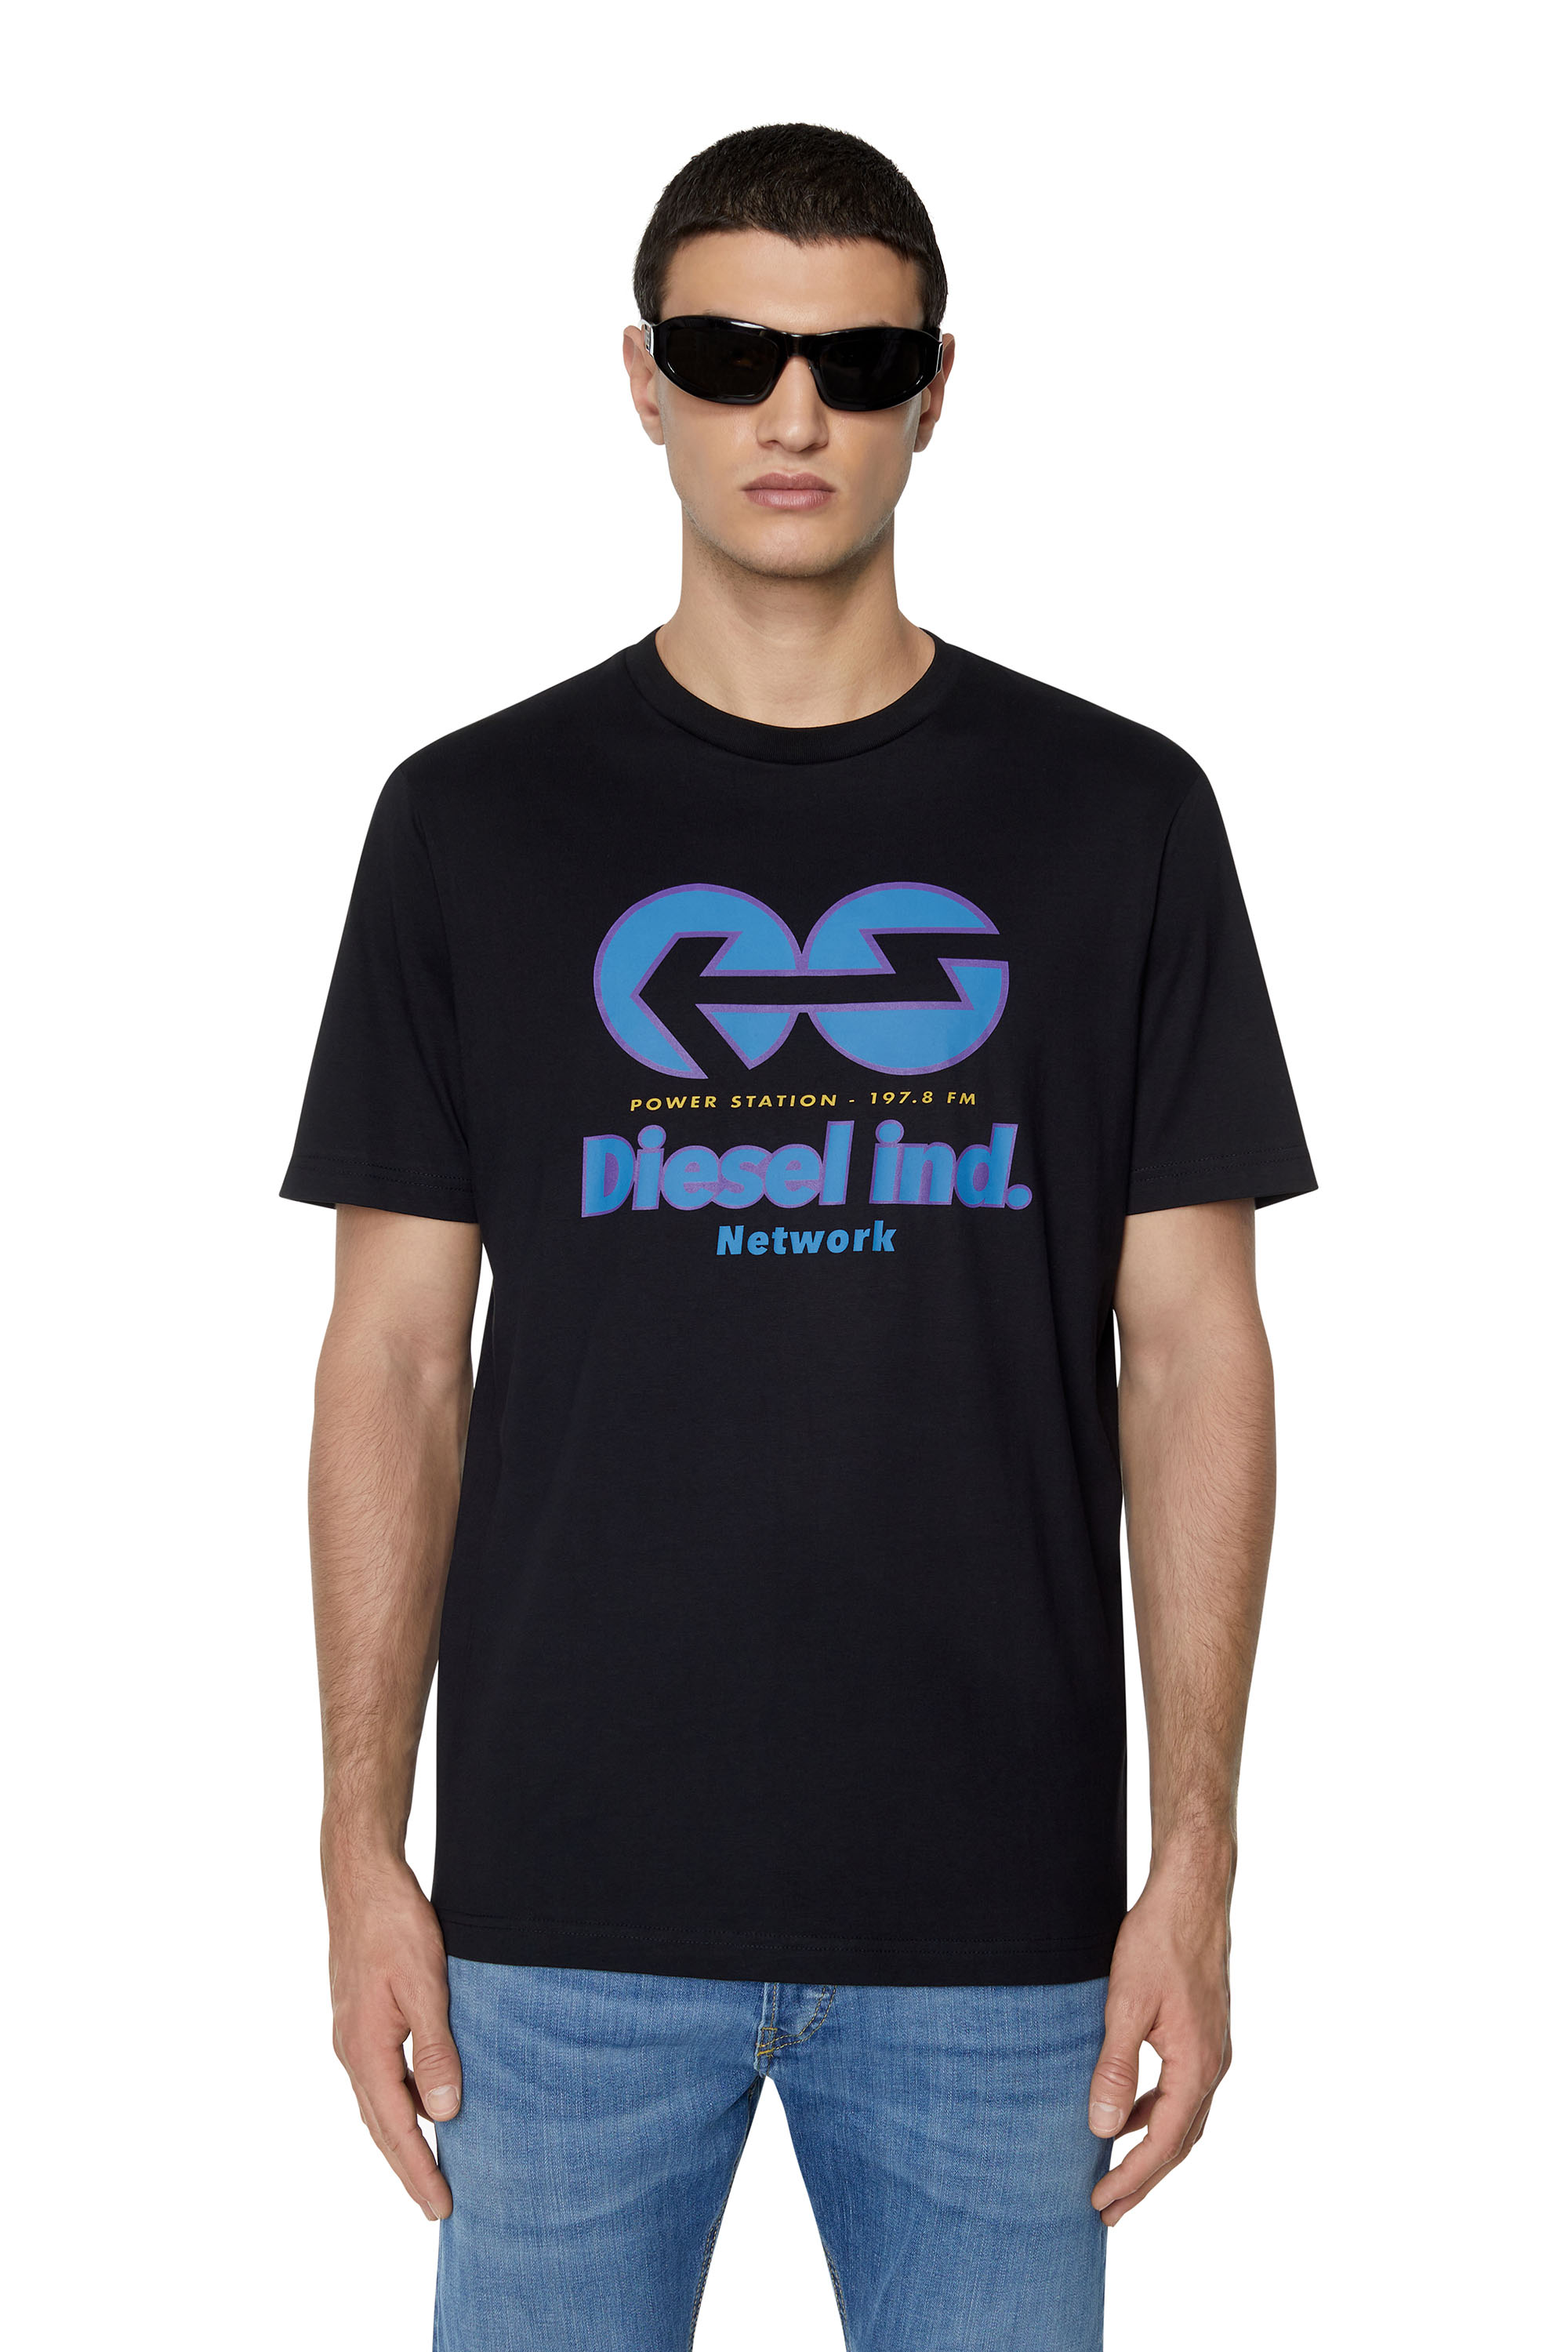 Diesel - T-shirt con stampa Diesel Network - T-Shirts - Uomo - Nero